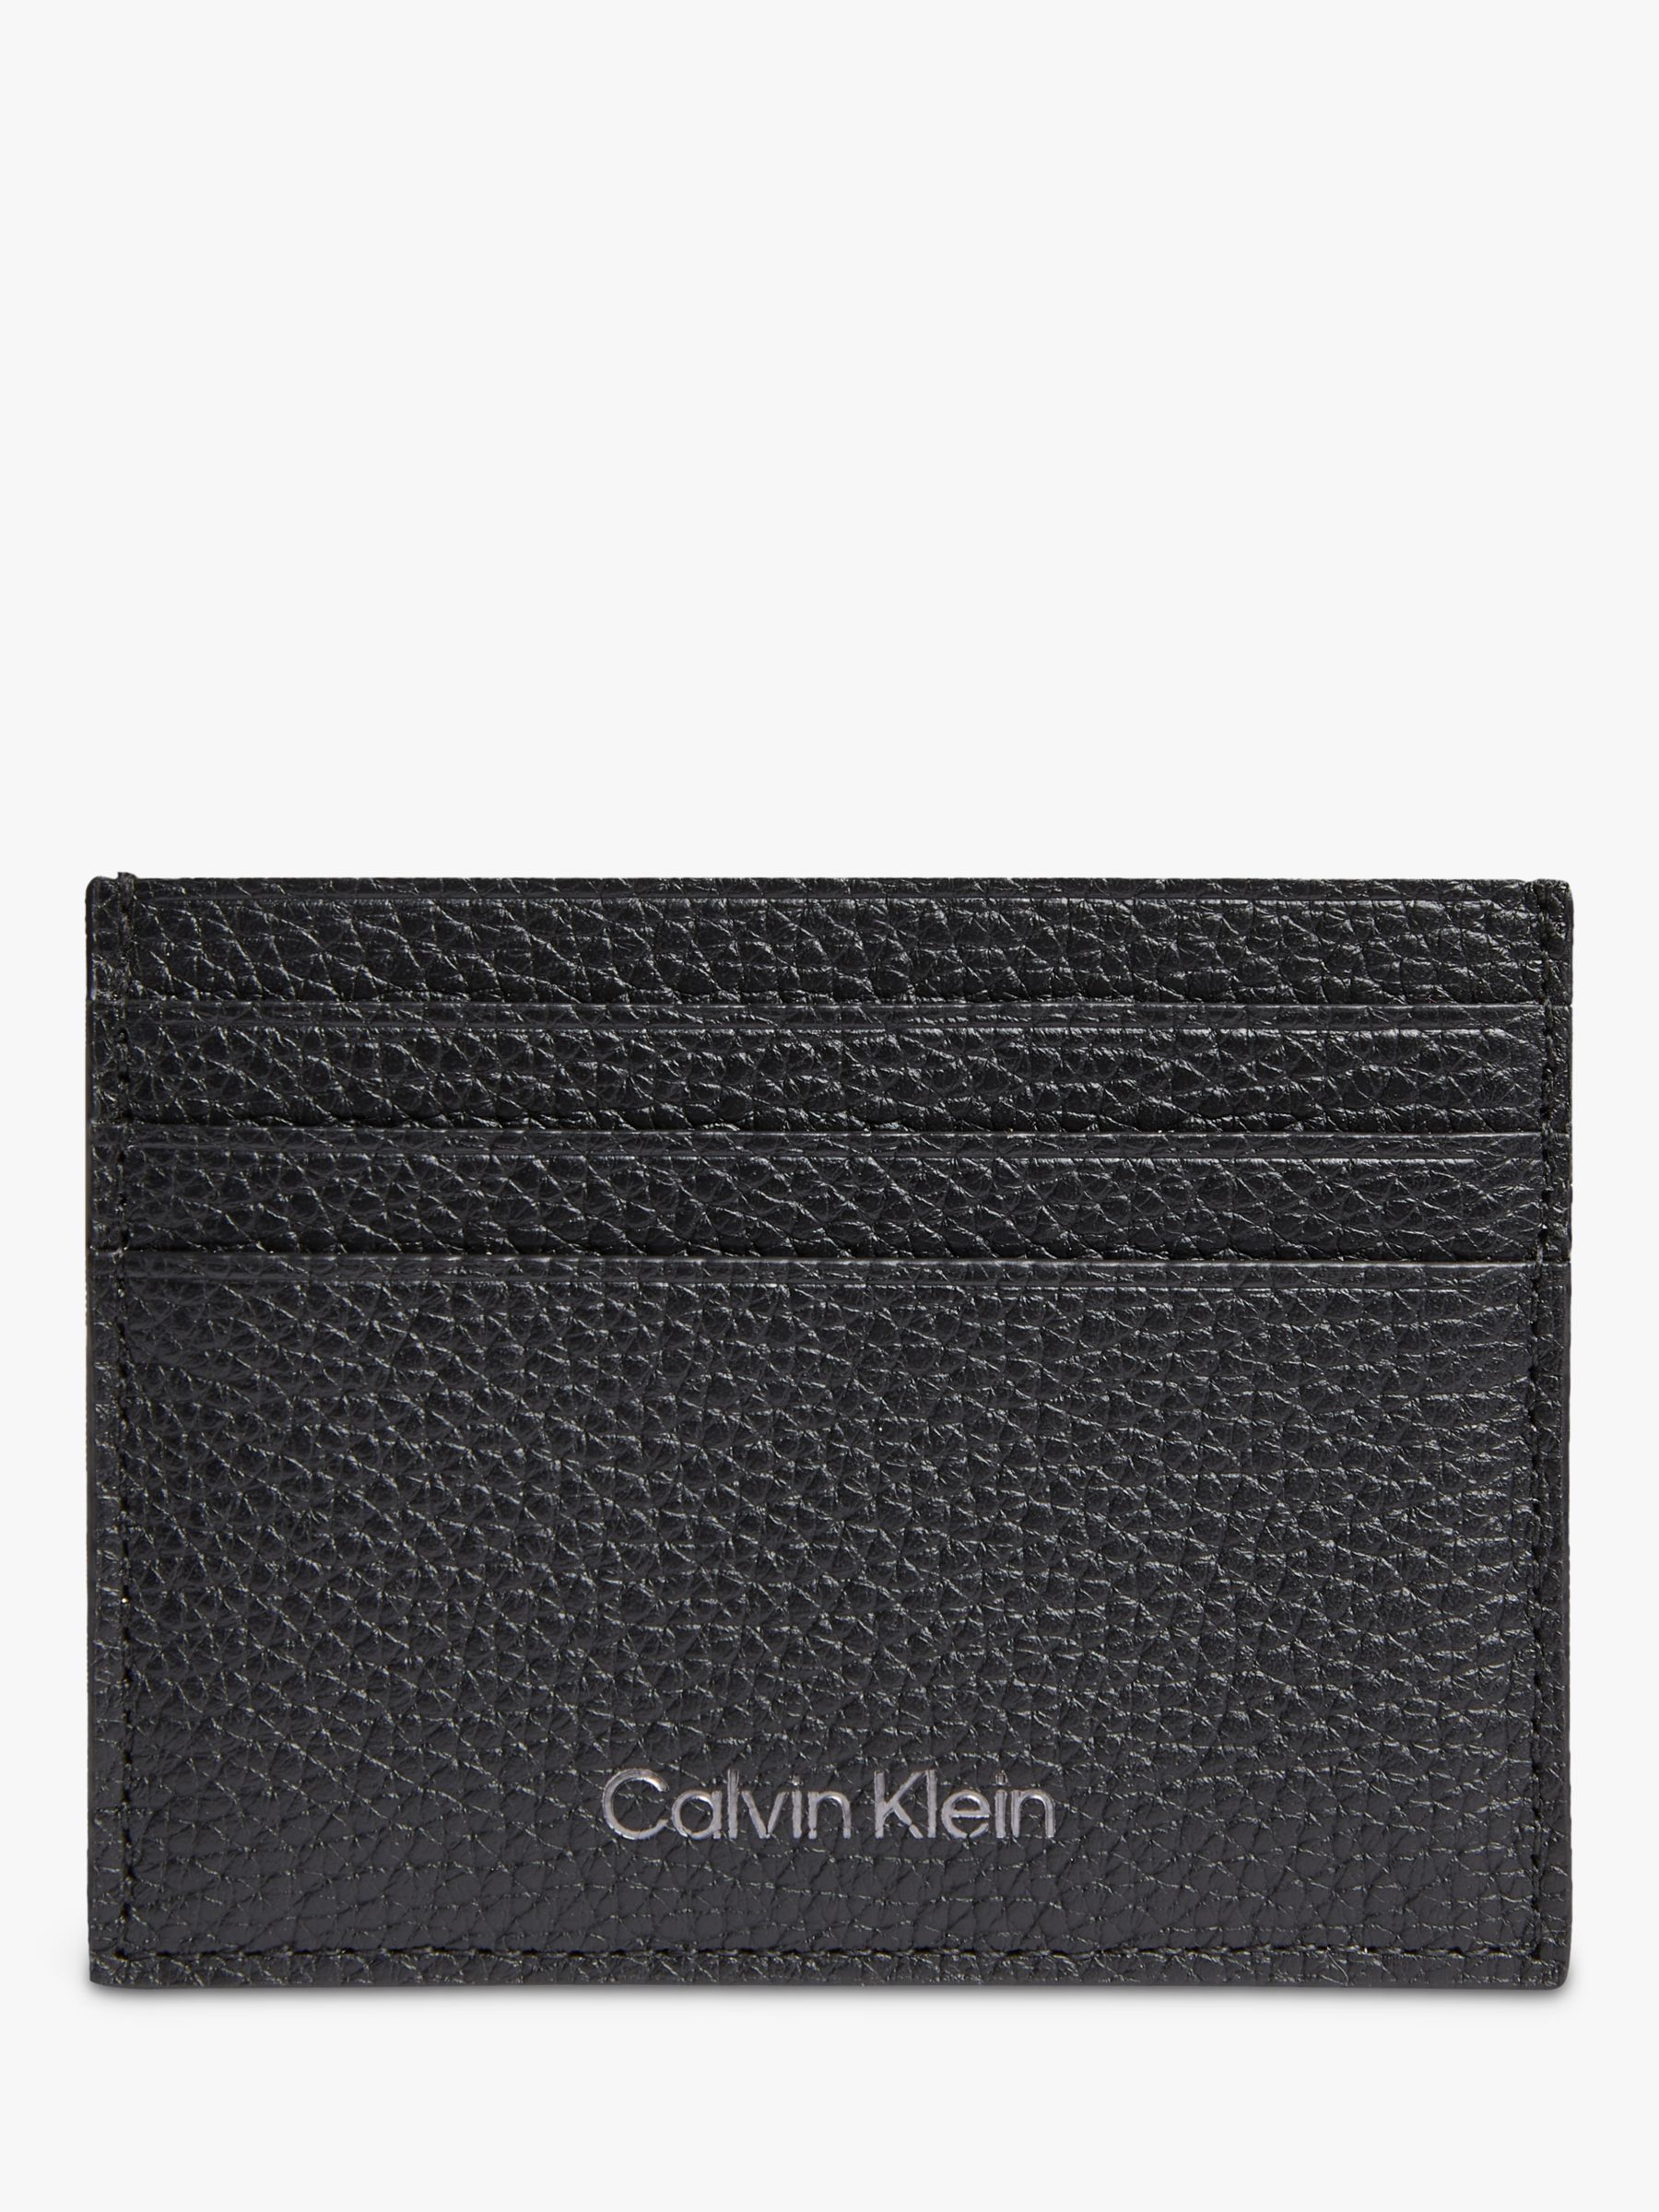 Calvin Klein Warmth Leather Card Holder, Black